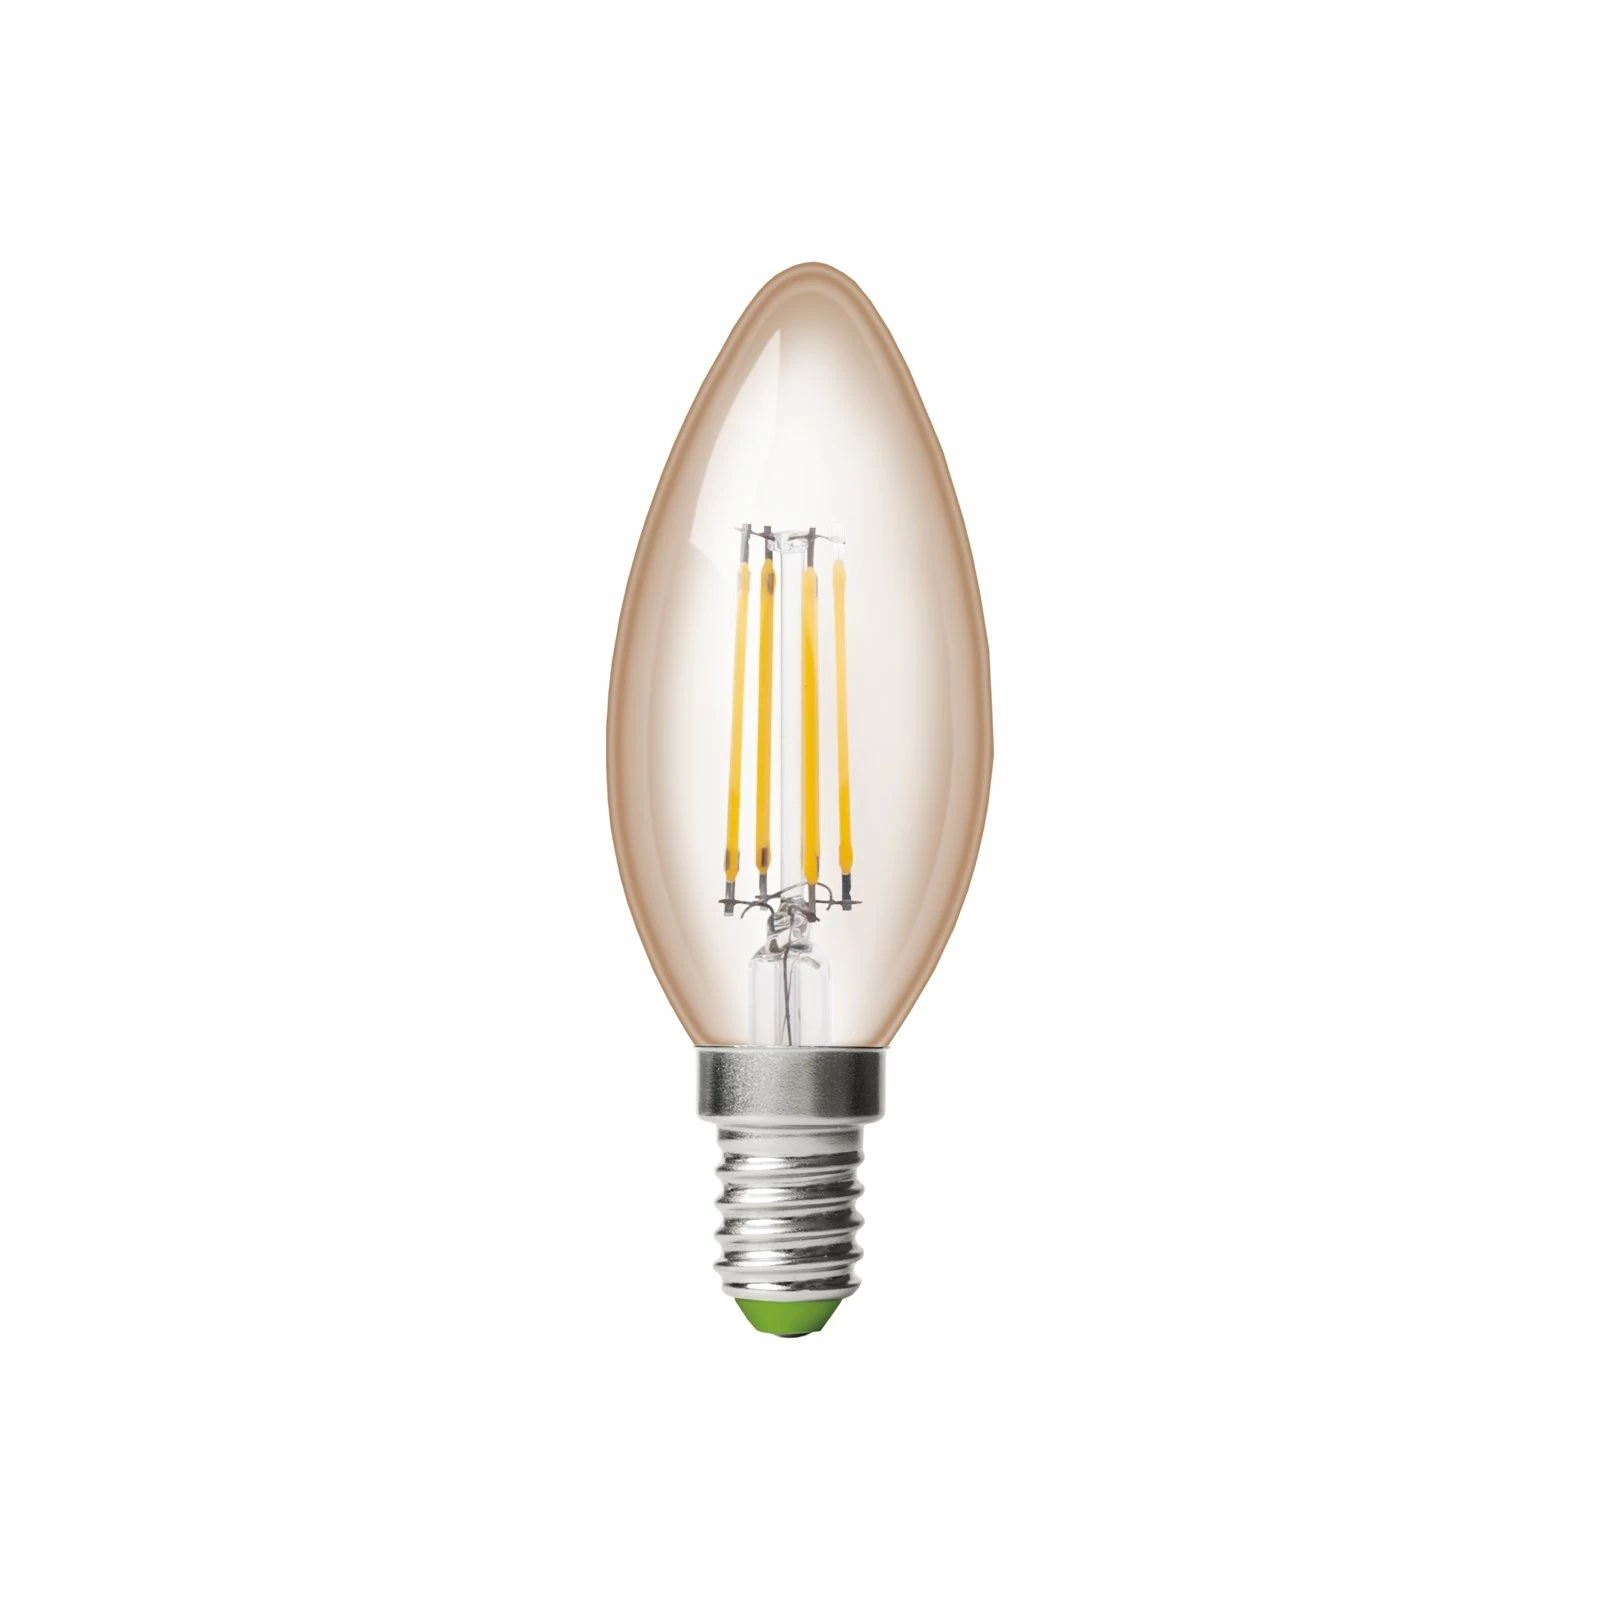 Лампочка Eurolamp LED CL 6W 620 Lm E14 3000K deco 2шт (MLP-LED-CL-06143(Amber)) зображення 2